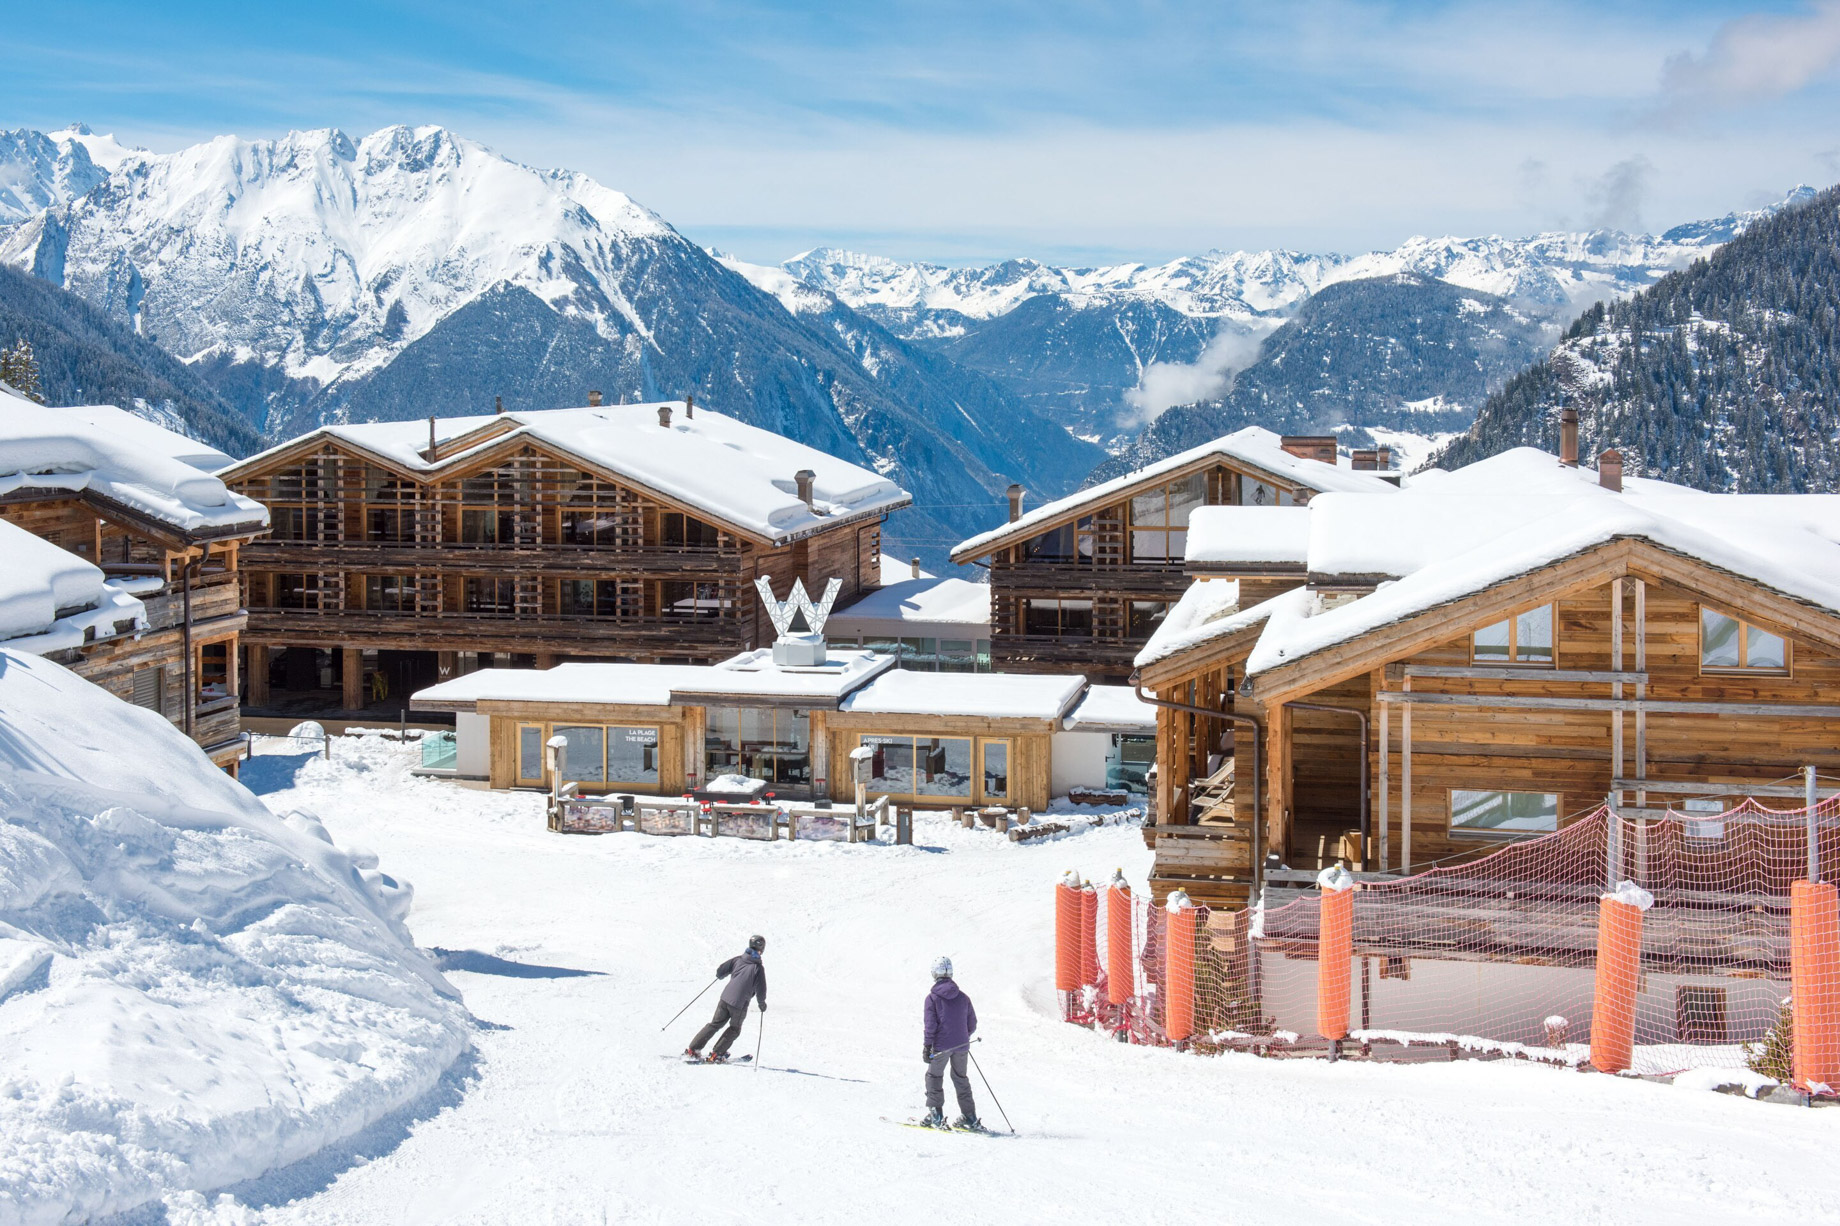 W Verbier Hotel – Verbier, Switzerland – Exterior Winter Ski Slope